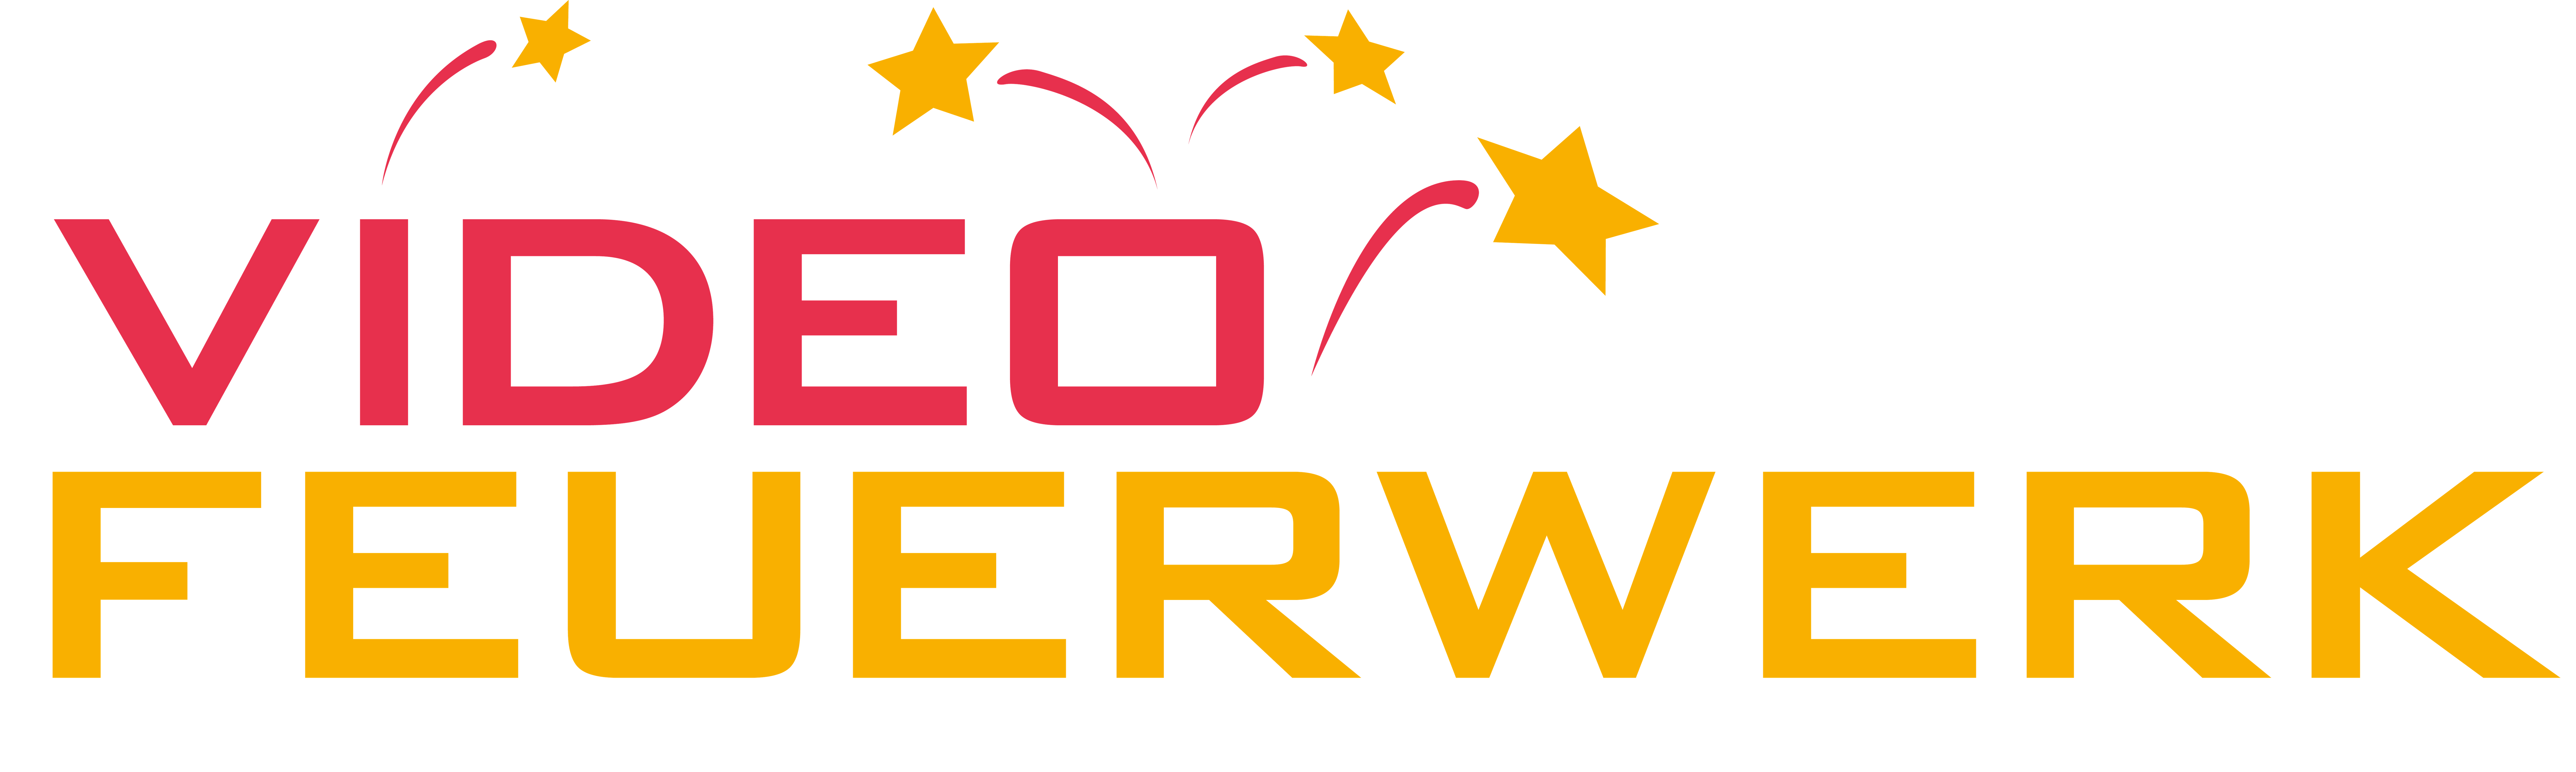 Logo-VideoFeuerwerk